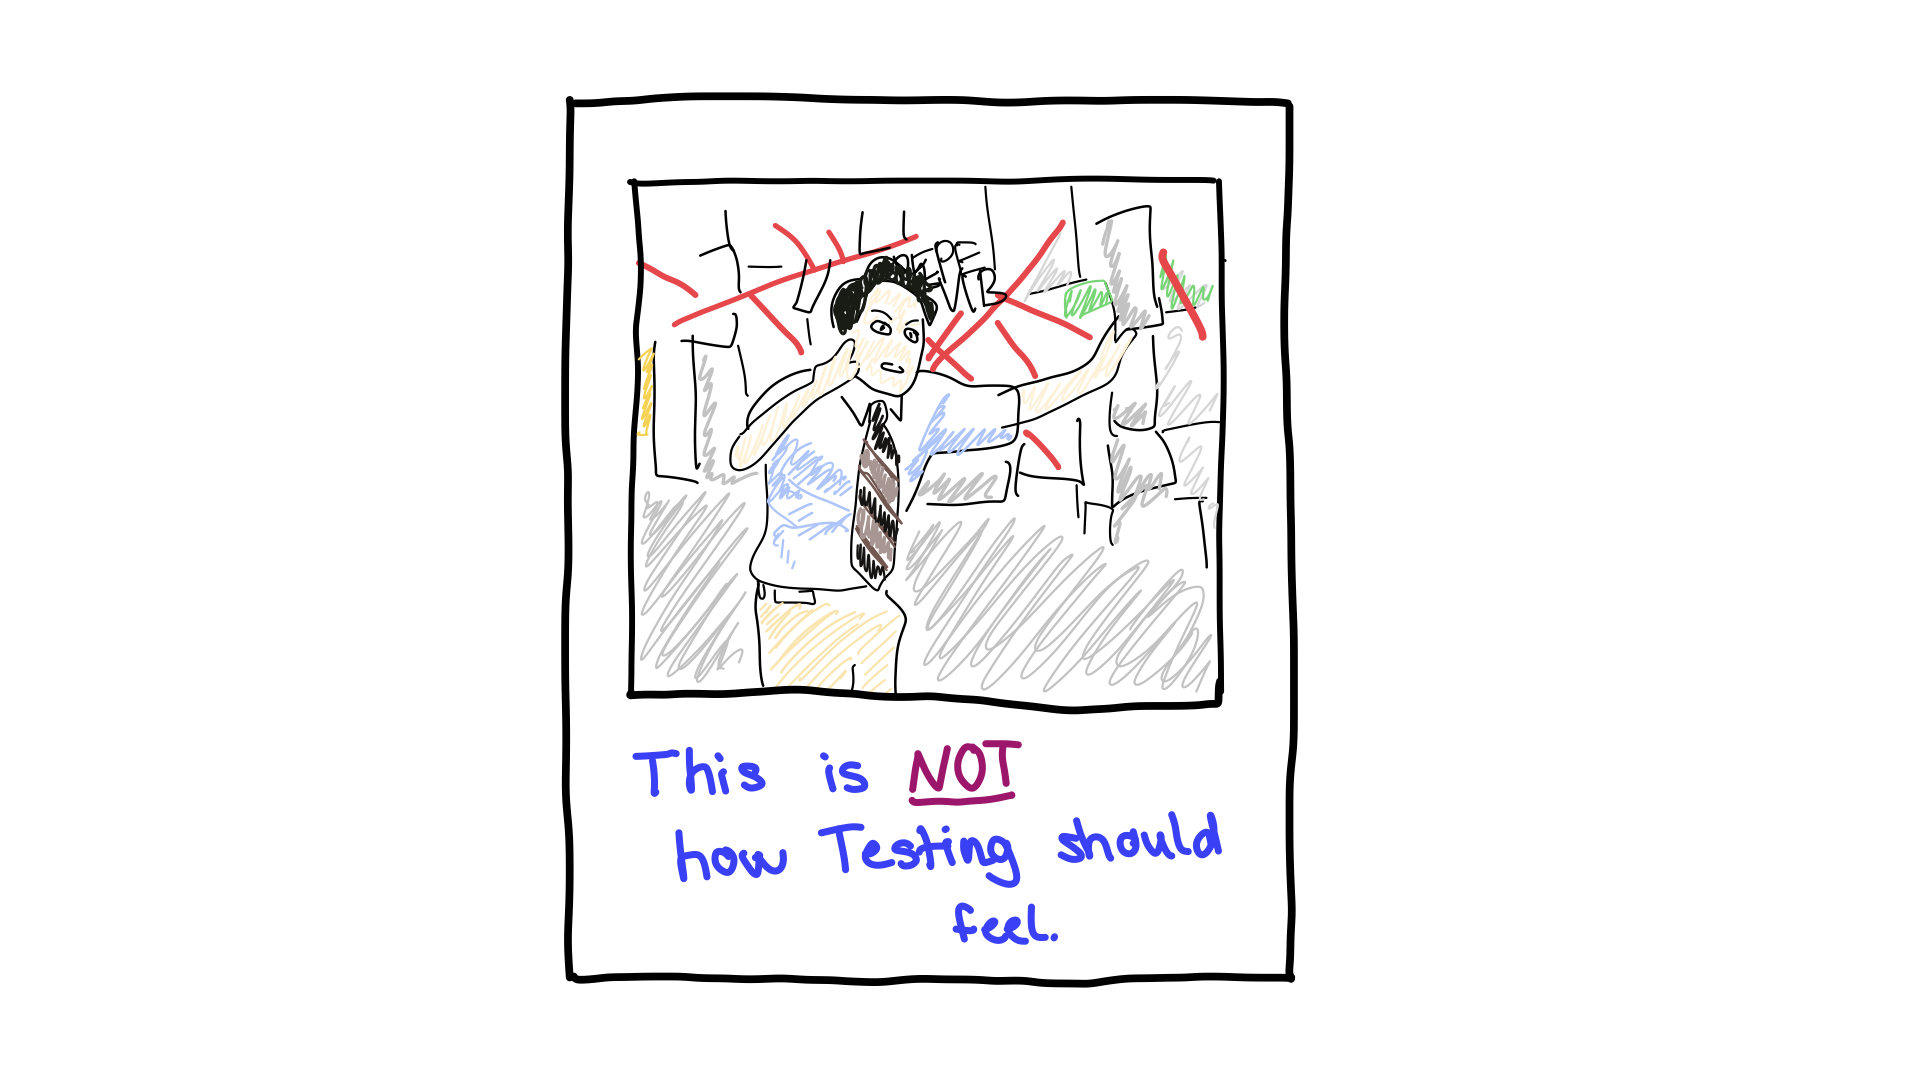 परीक्षणों को जटिल न बनाएं, उन्हें इस तरह महसूस नहीं होना चाहिए.